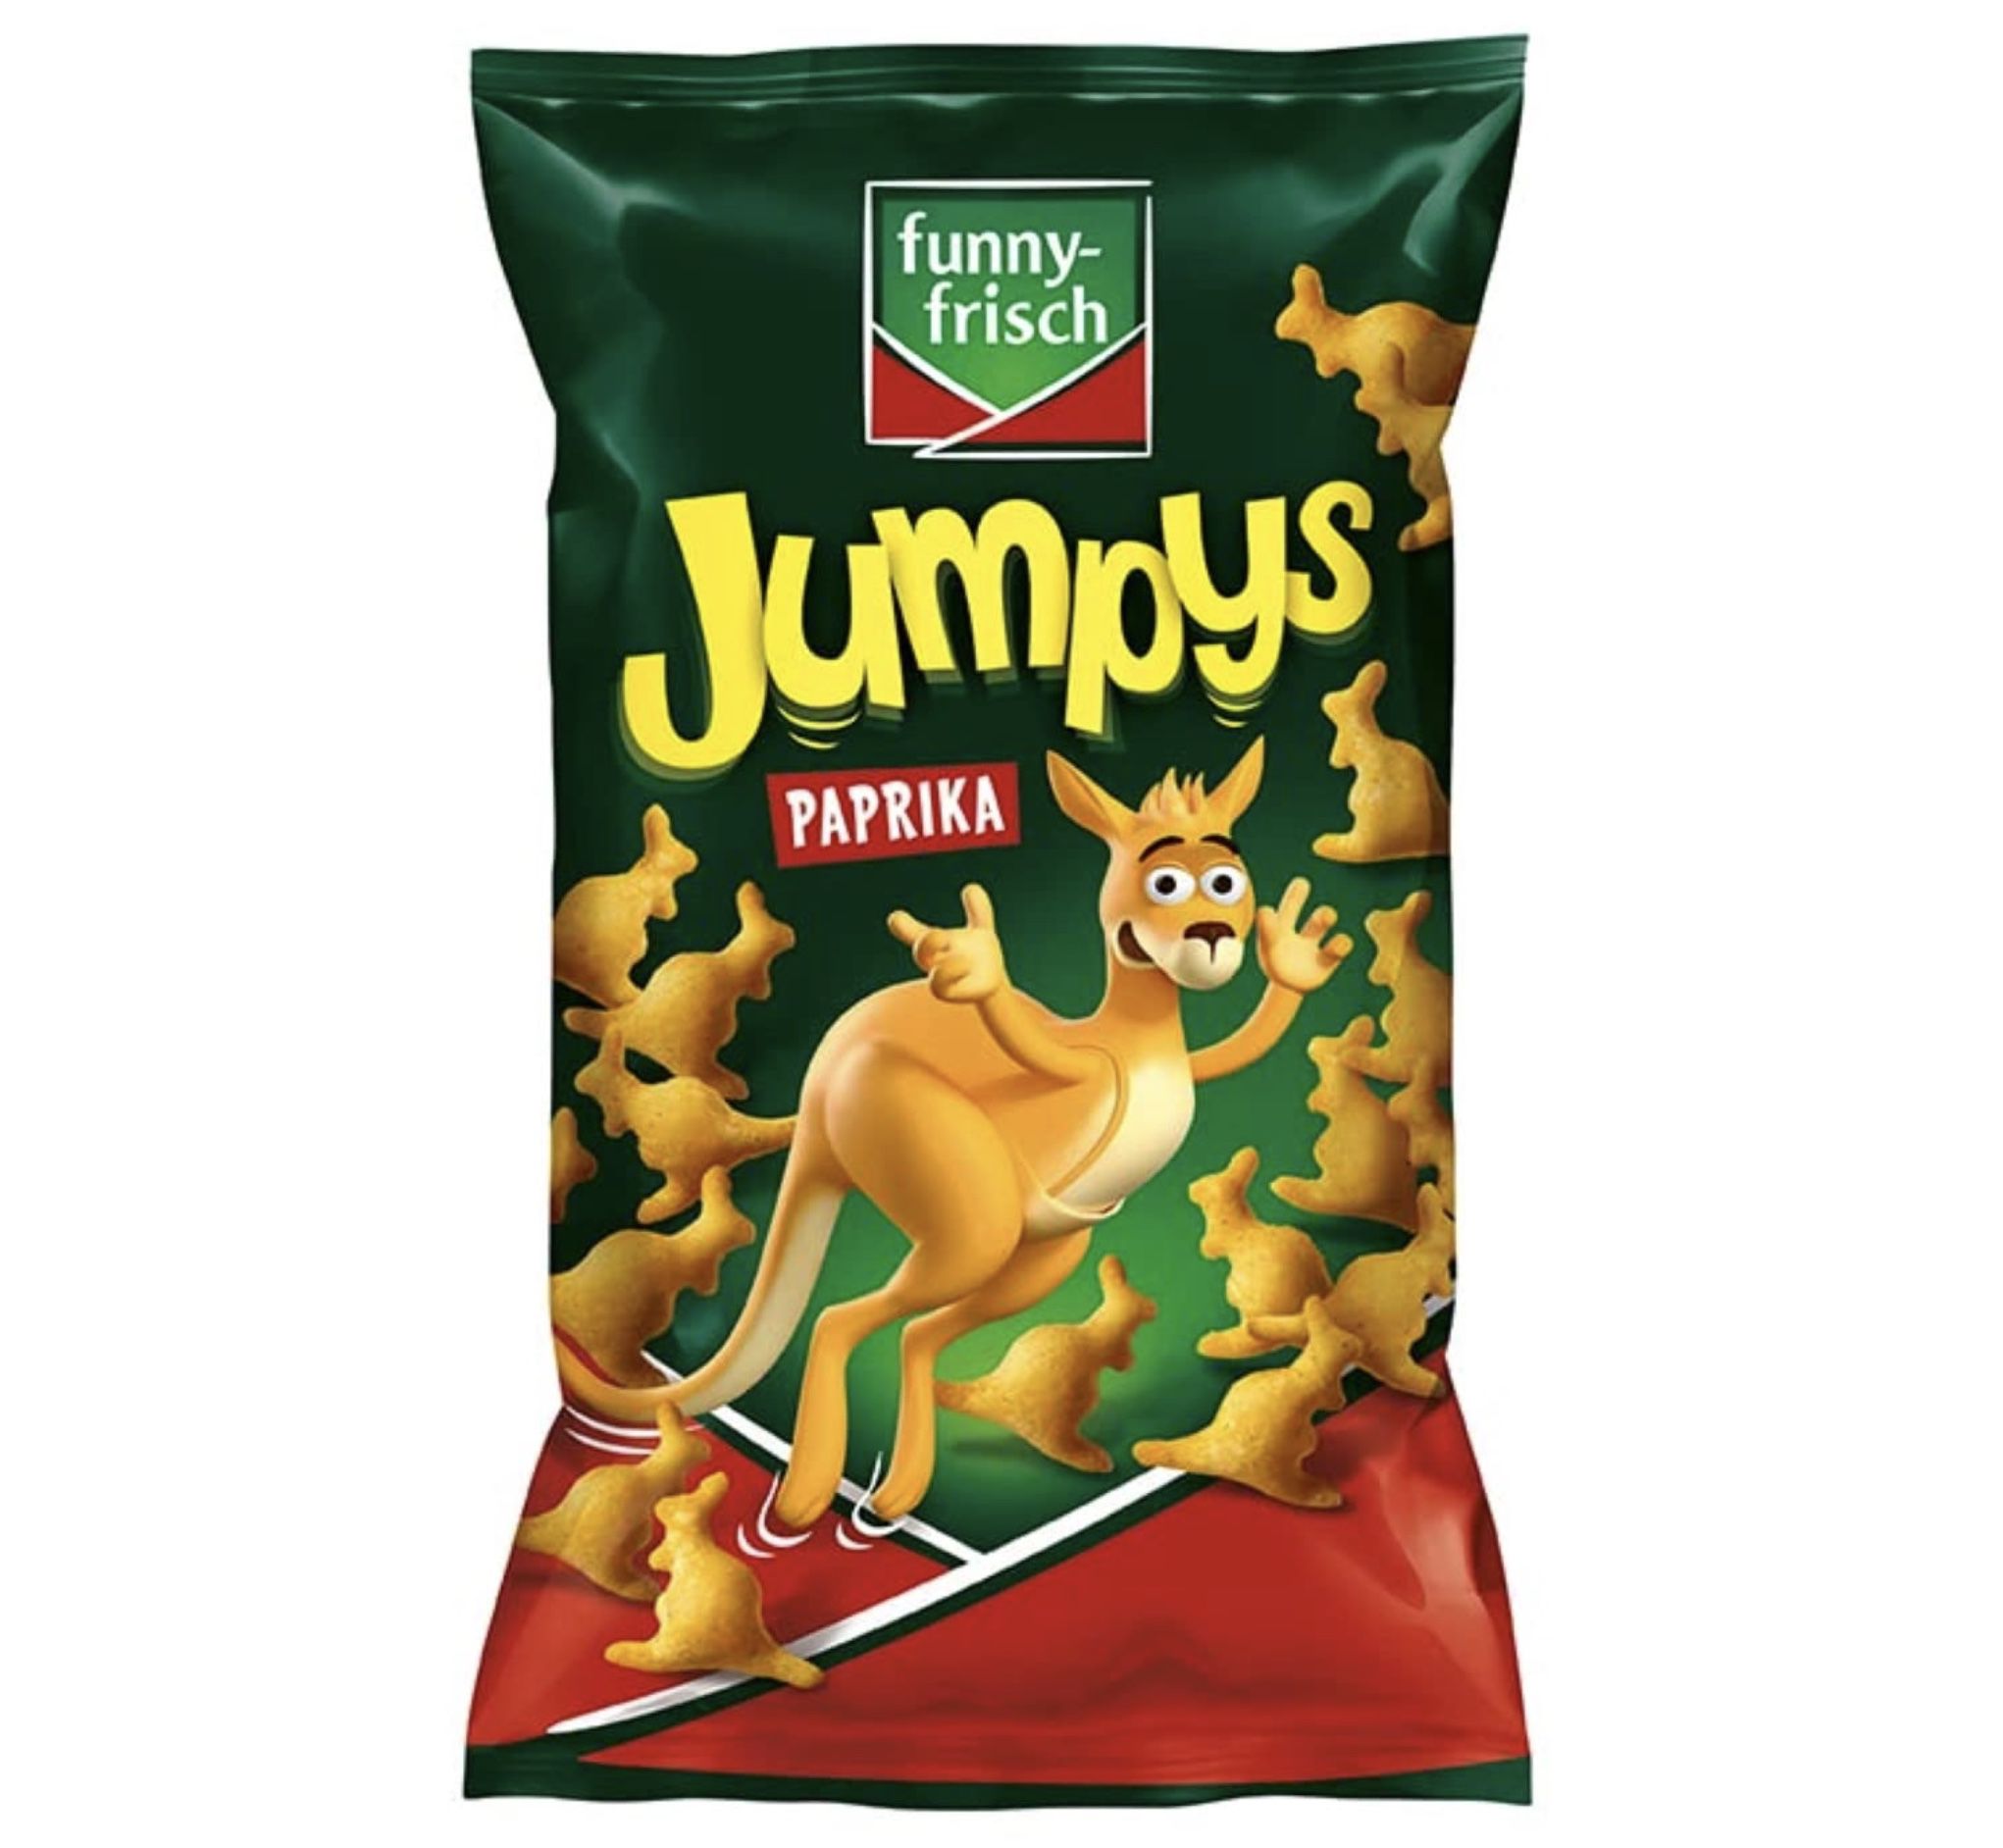 20er Pack funny frisch Jumpys Paprika je 75g ab 12,64€ (statt 28€)   Prime Sparabo